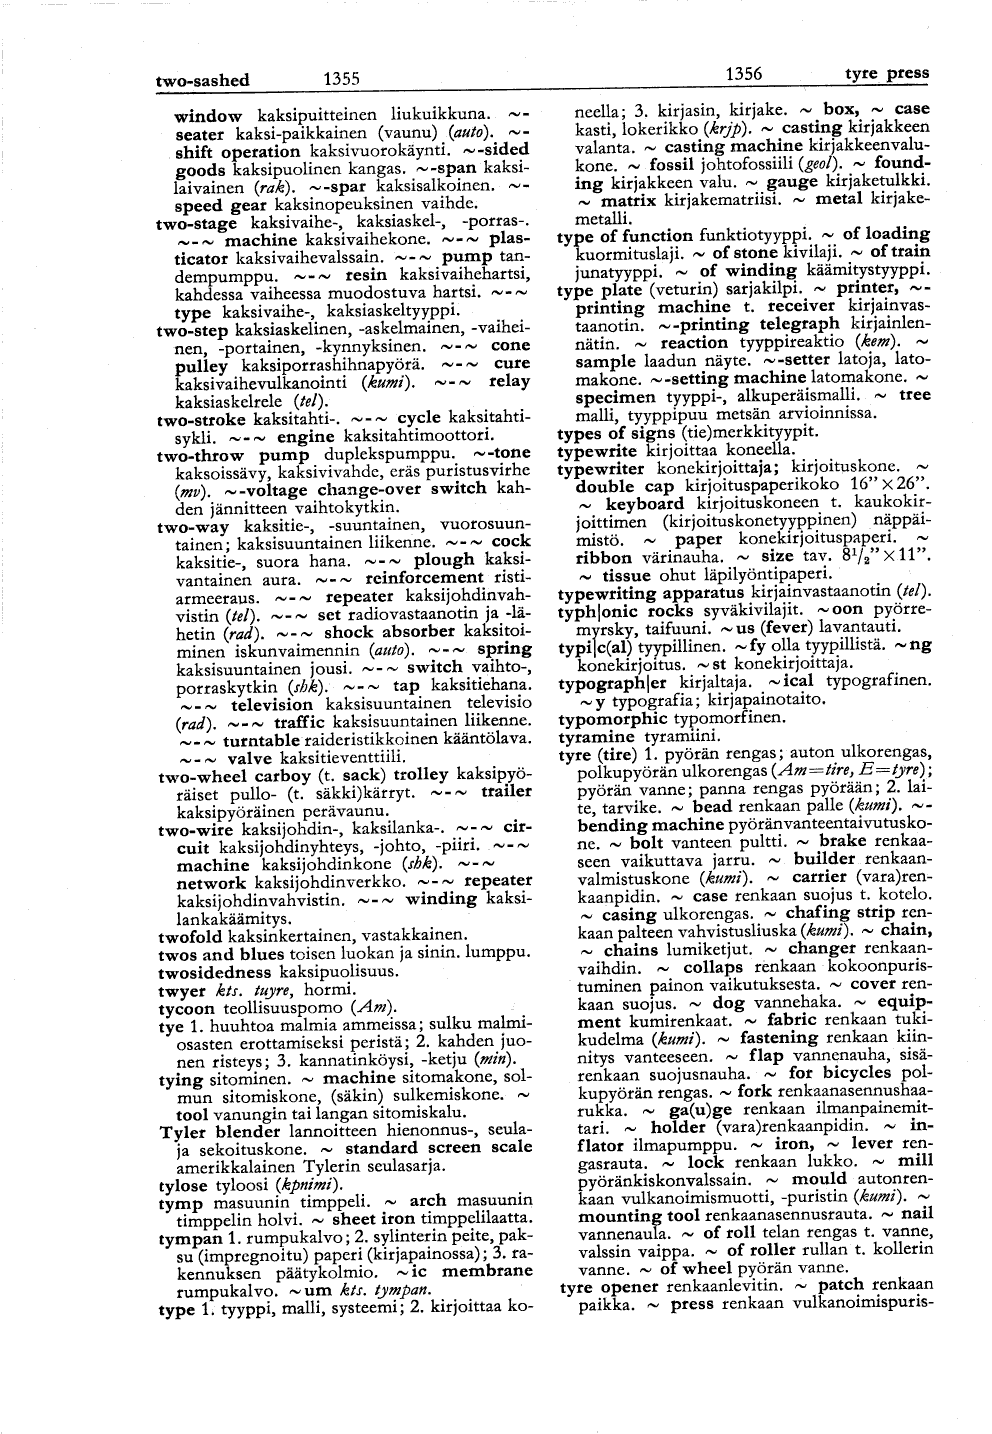 1355-1356 (Englantilais-suomalainen tekniikan ja kaupan sanakirja)